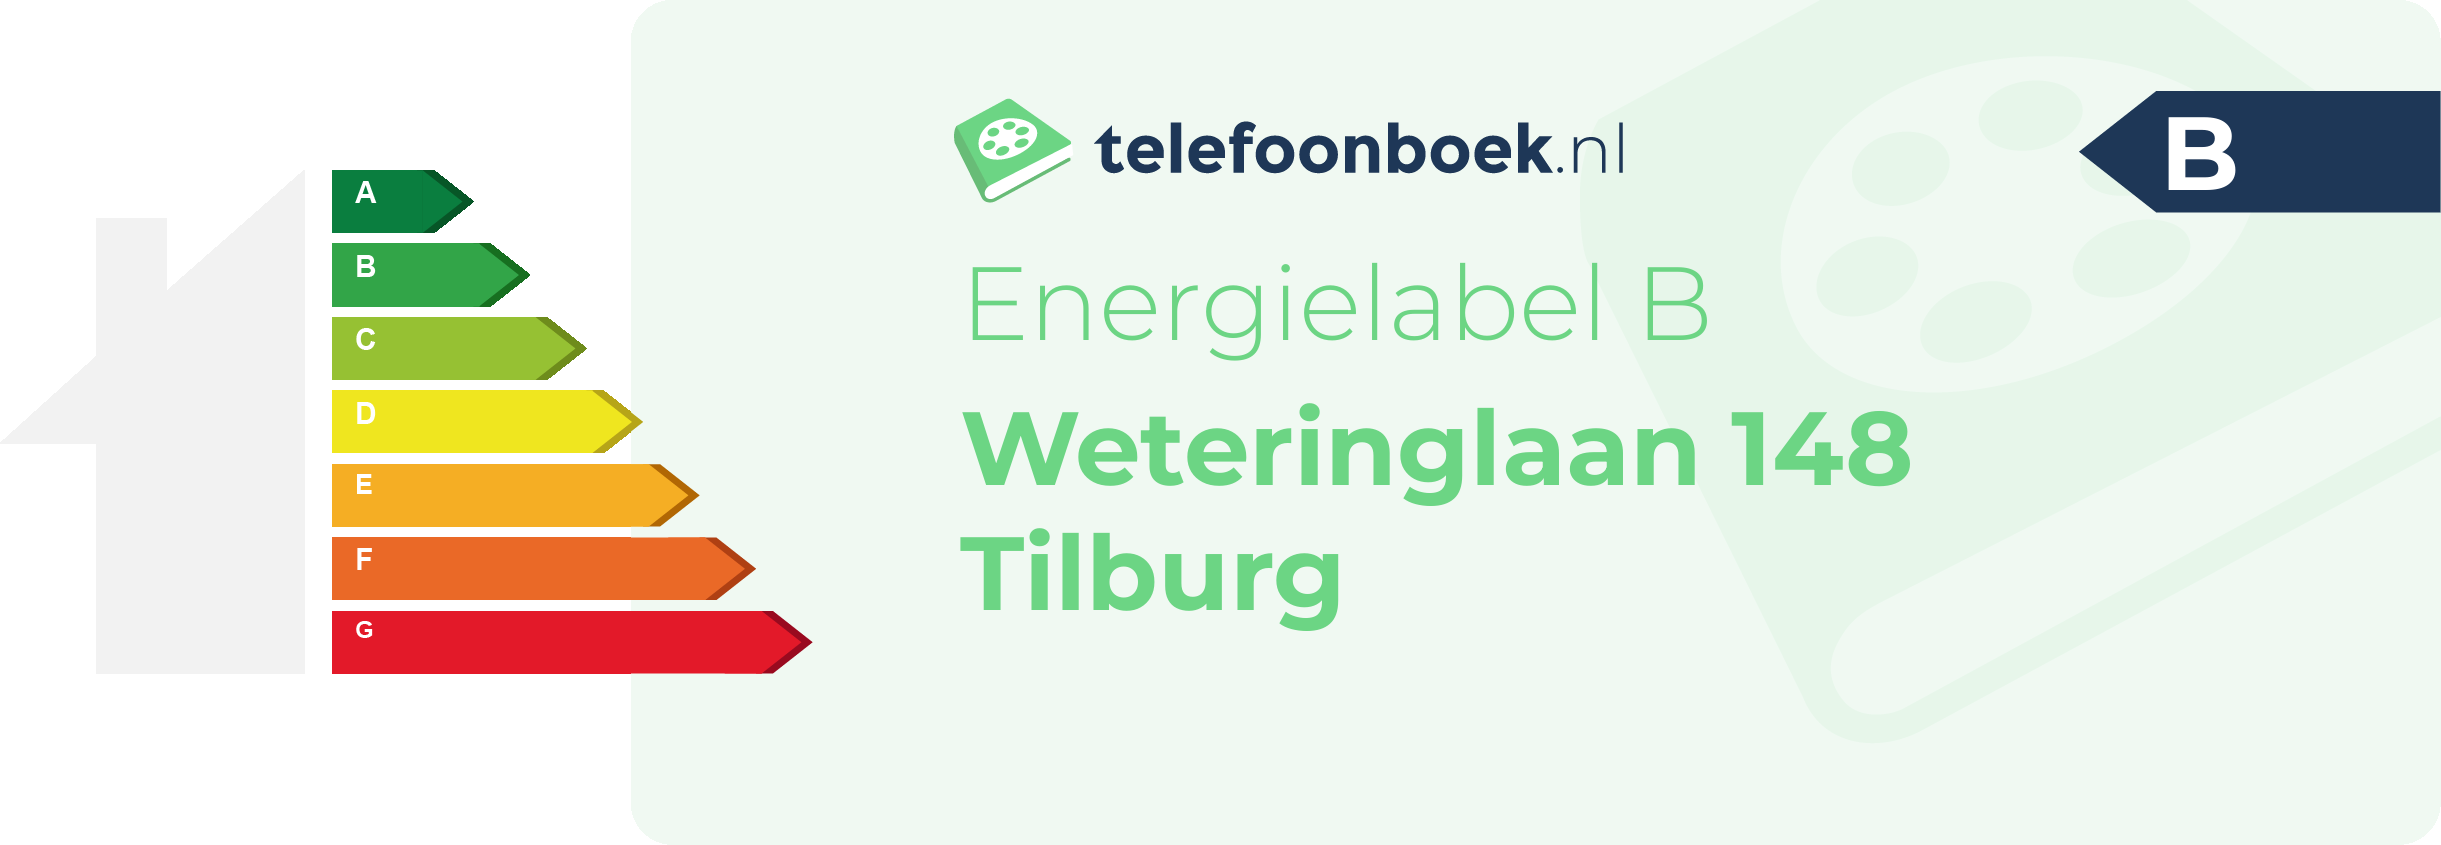 Energielabel Weteringlaan 148 Tilburg